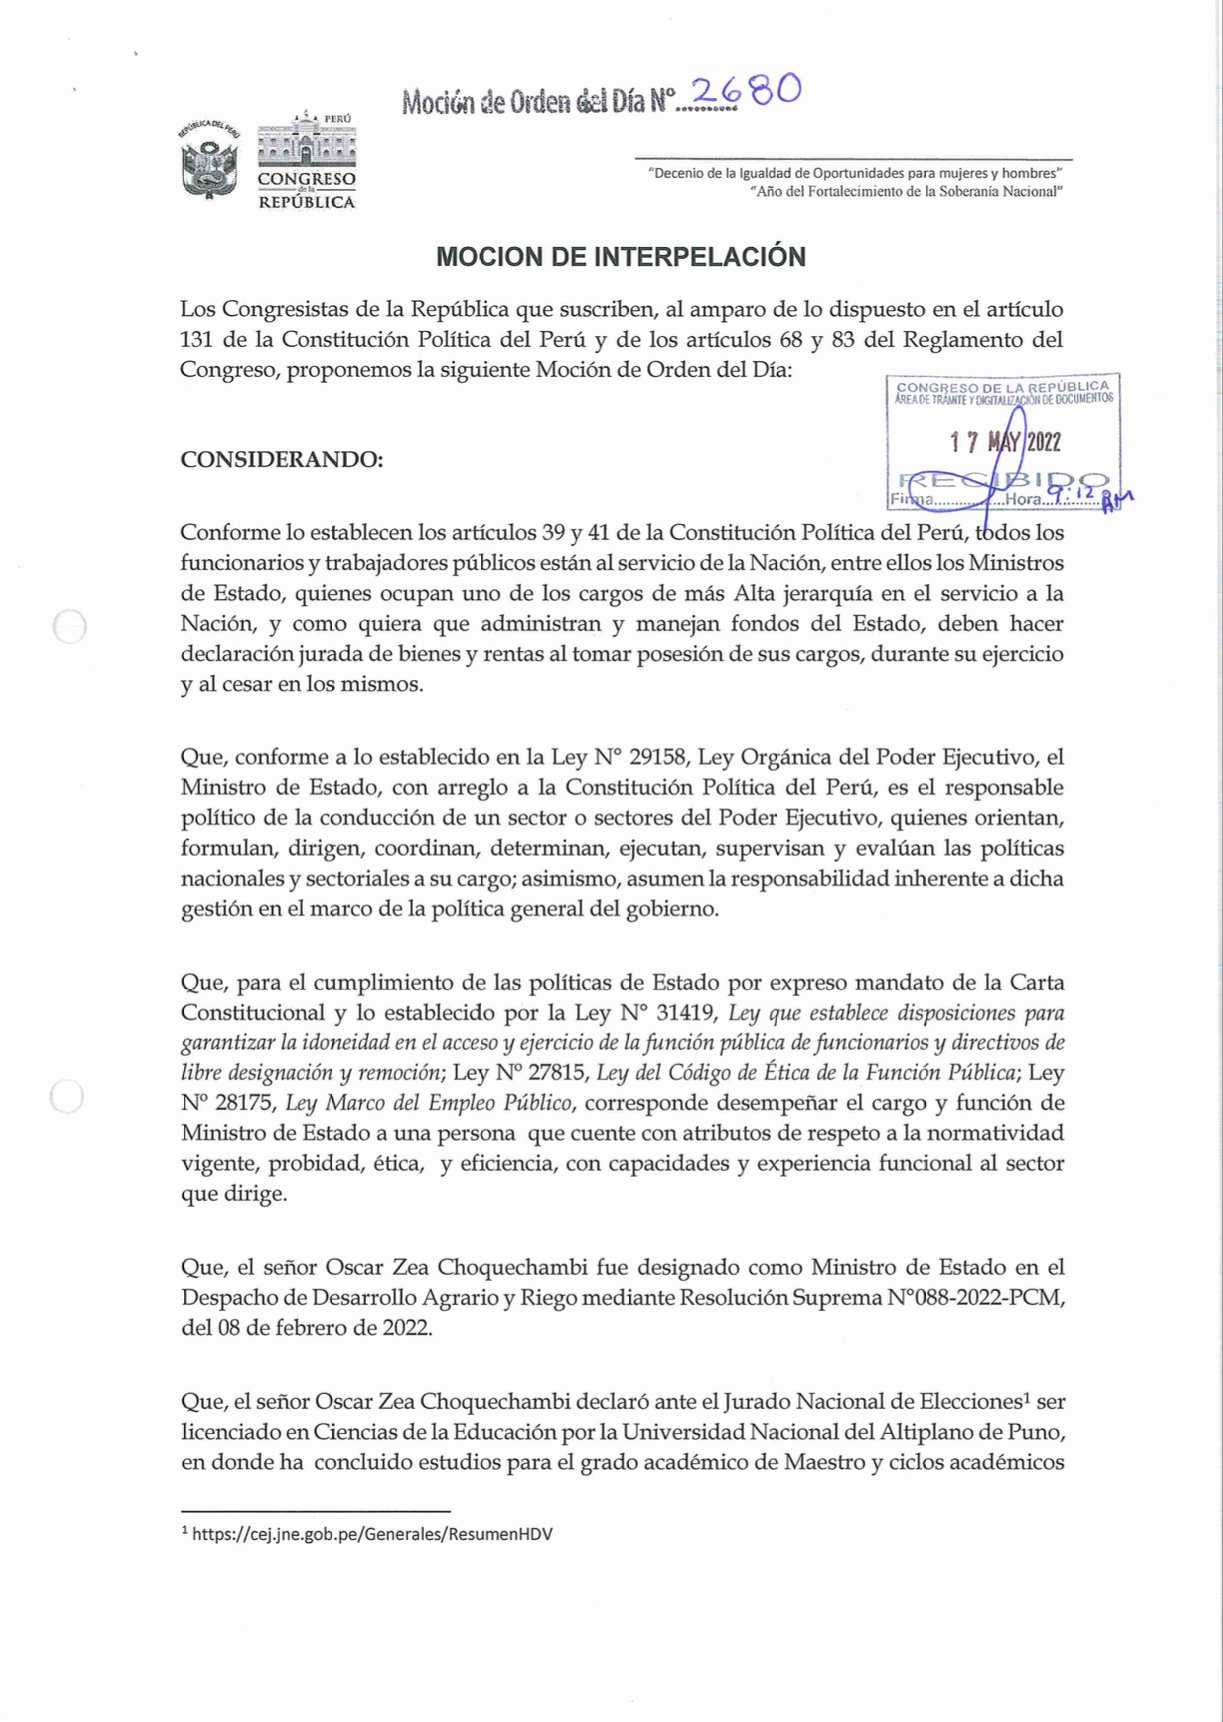 Presentan moción de interpelación contra ministro Óscar Zea - El Tiempo